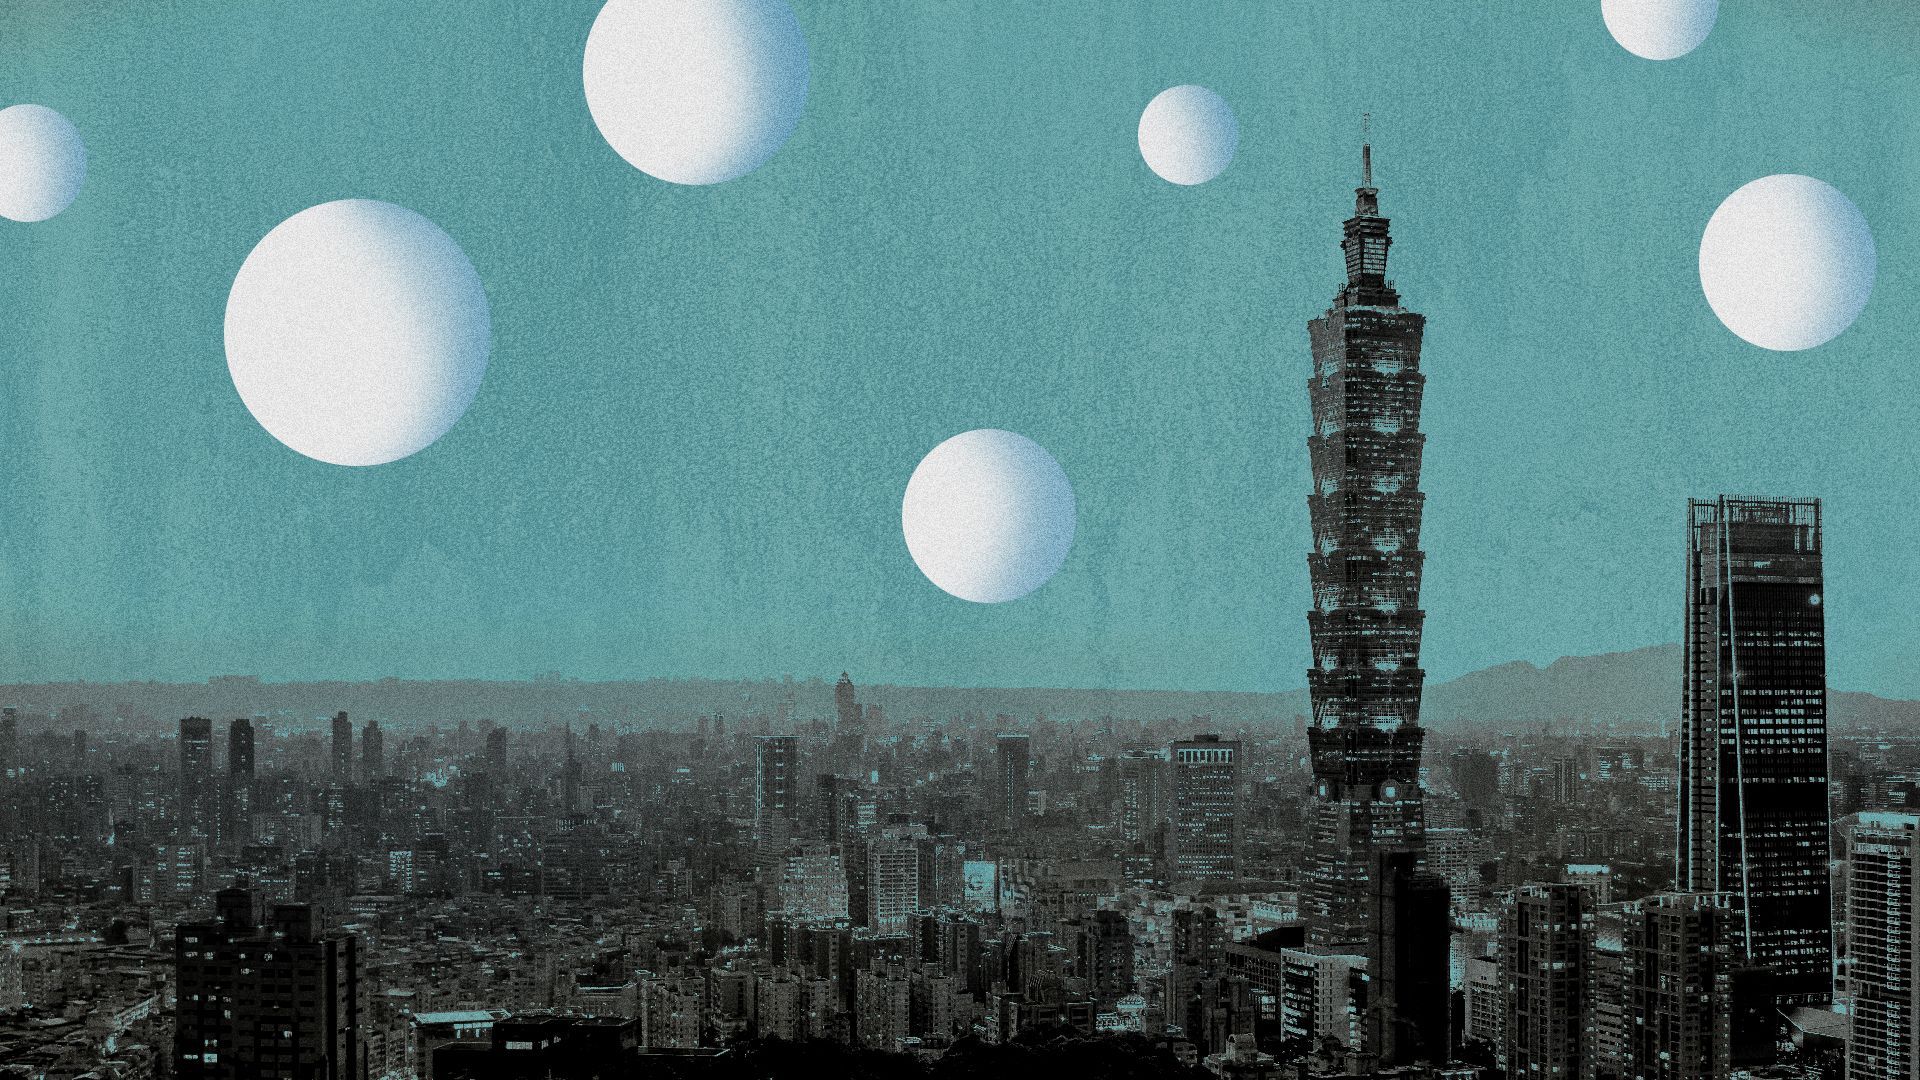 Illustration of abstract white surveillance balloons above Taipei's skyline.